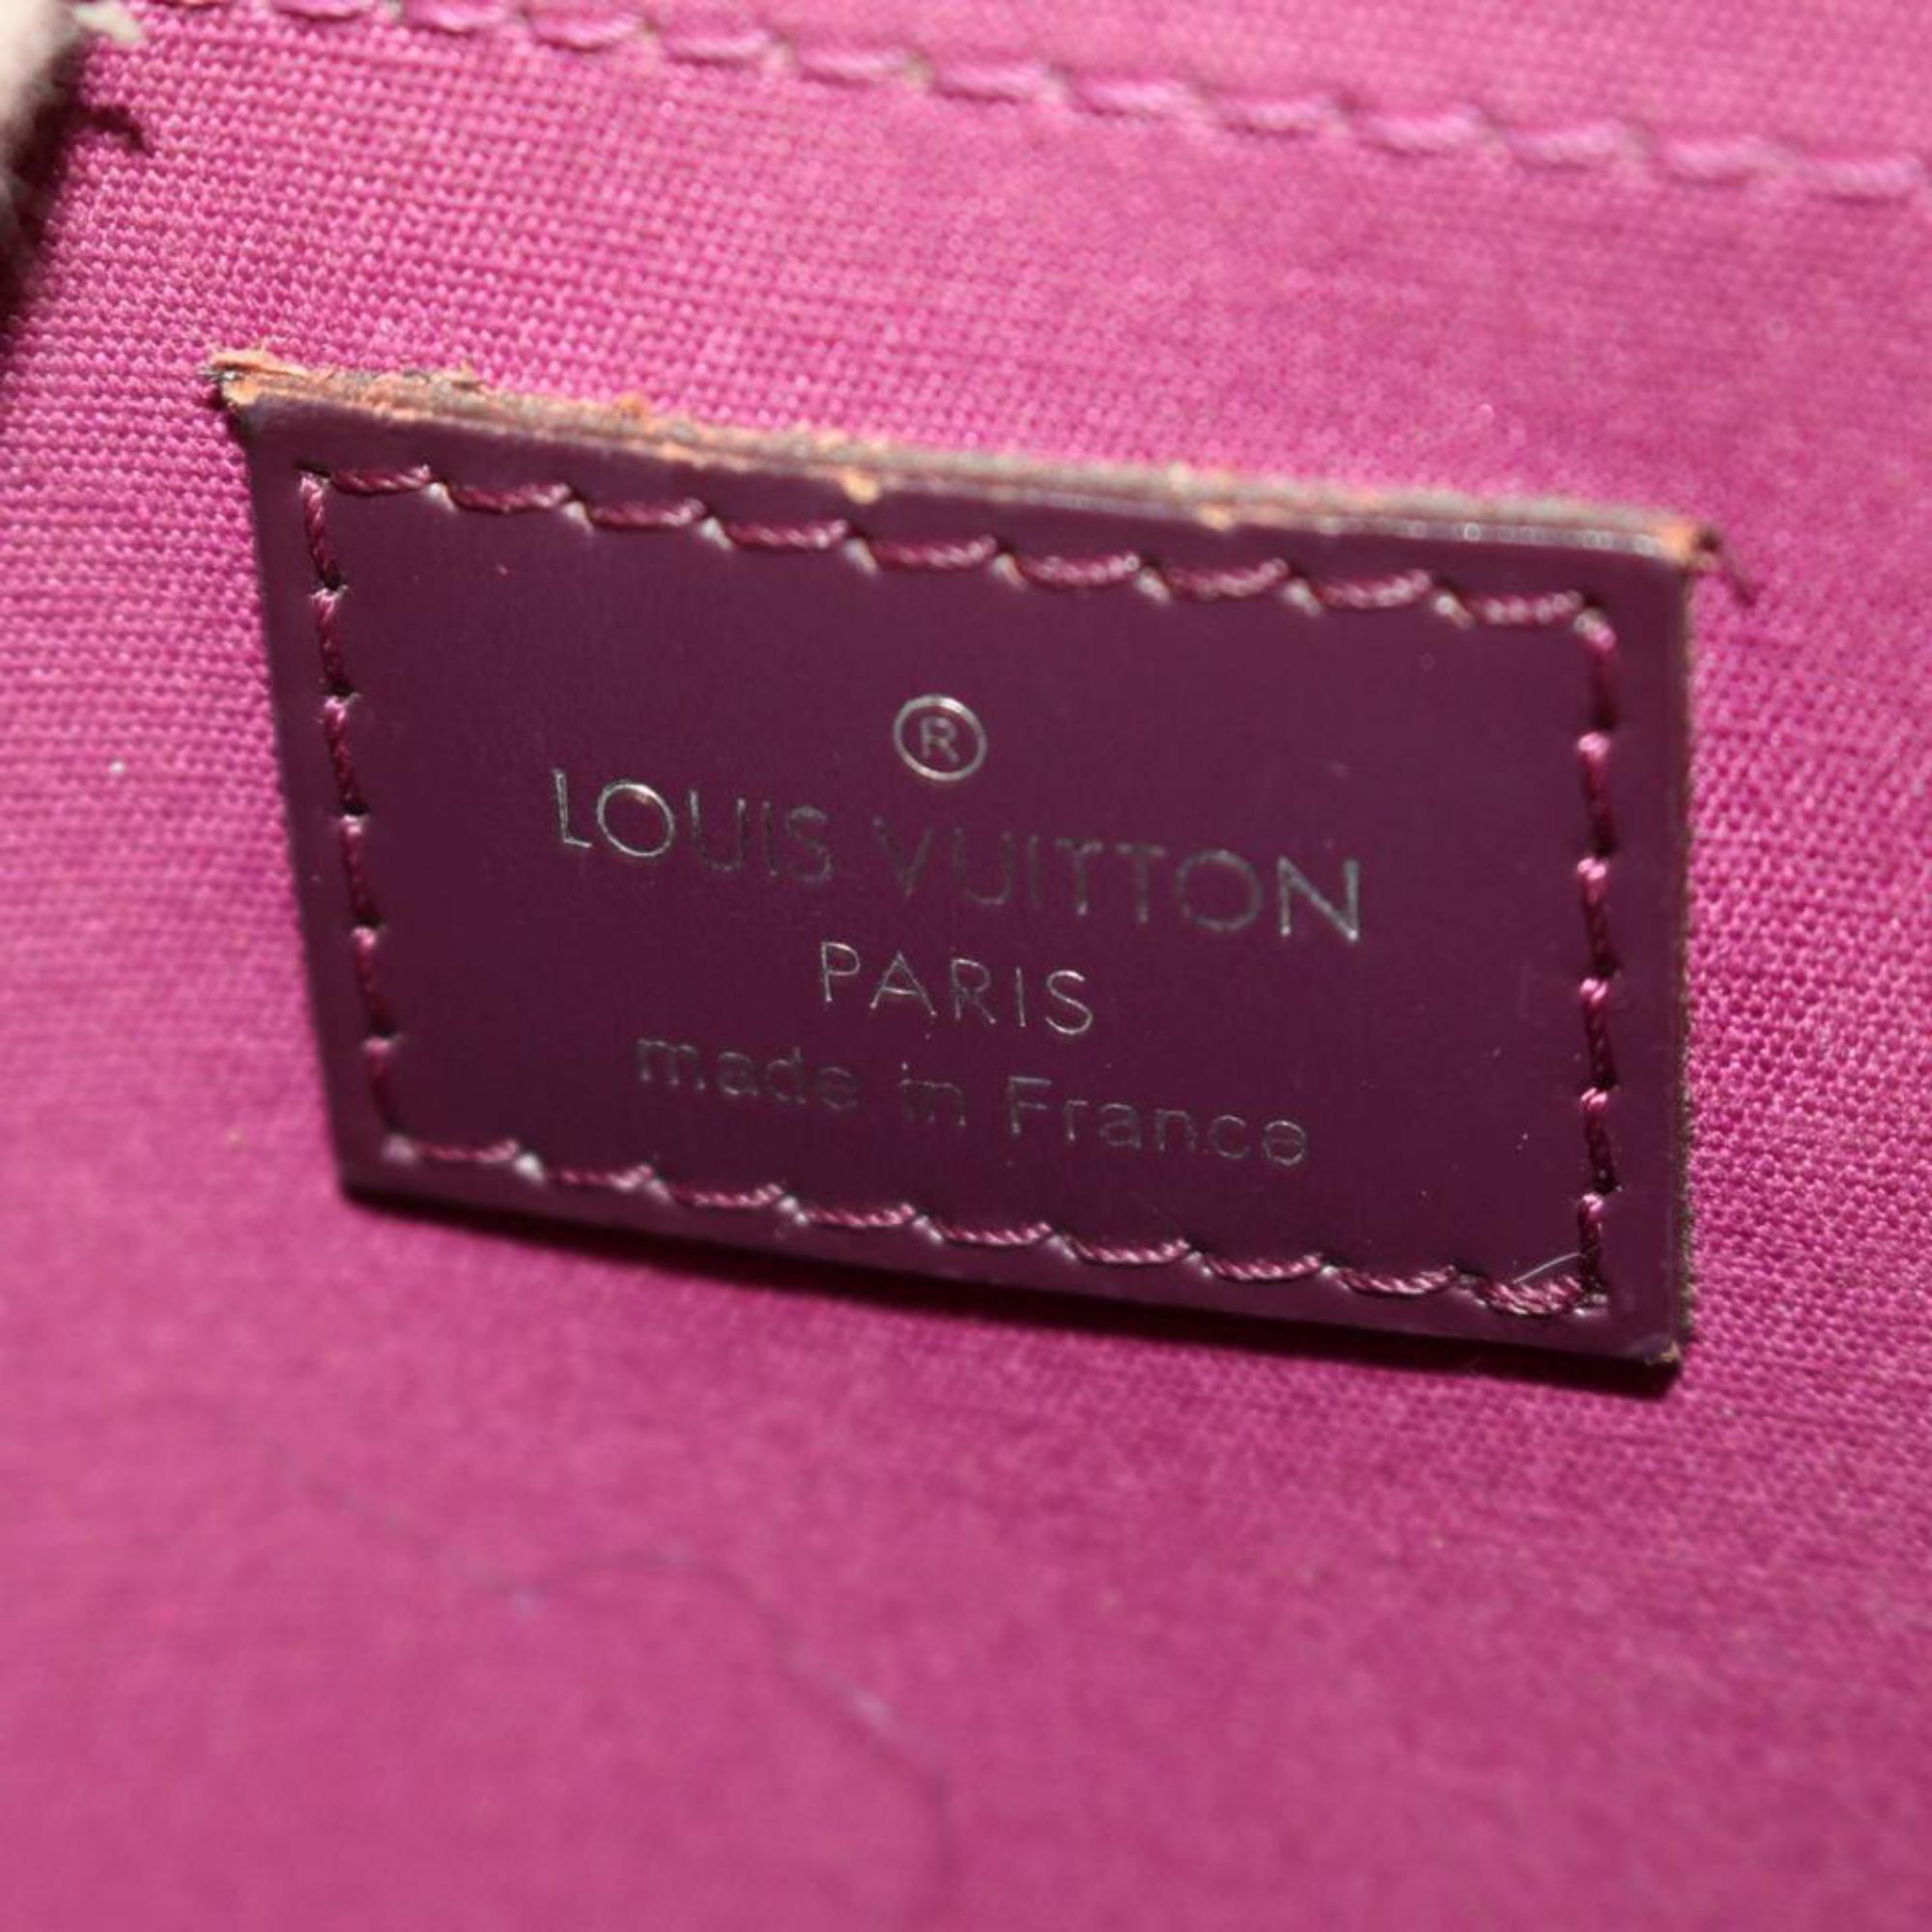 Women's Louis Vuitton Passy Cassis Epi Pm 867138 Purple Leather Satchel For Sale